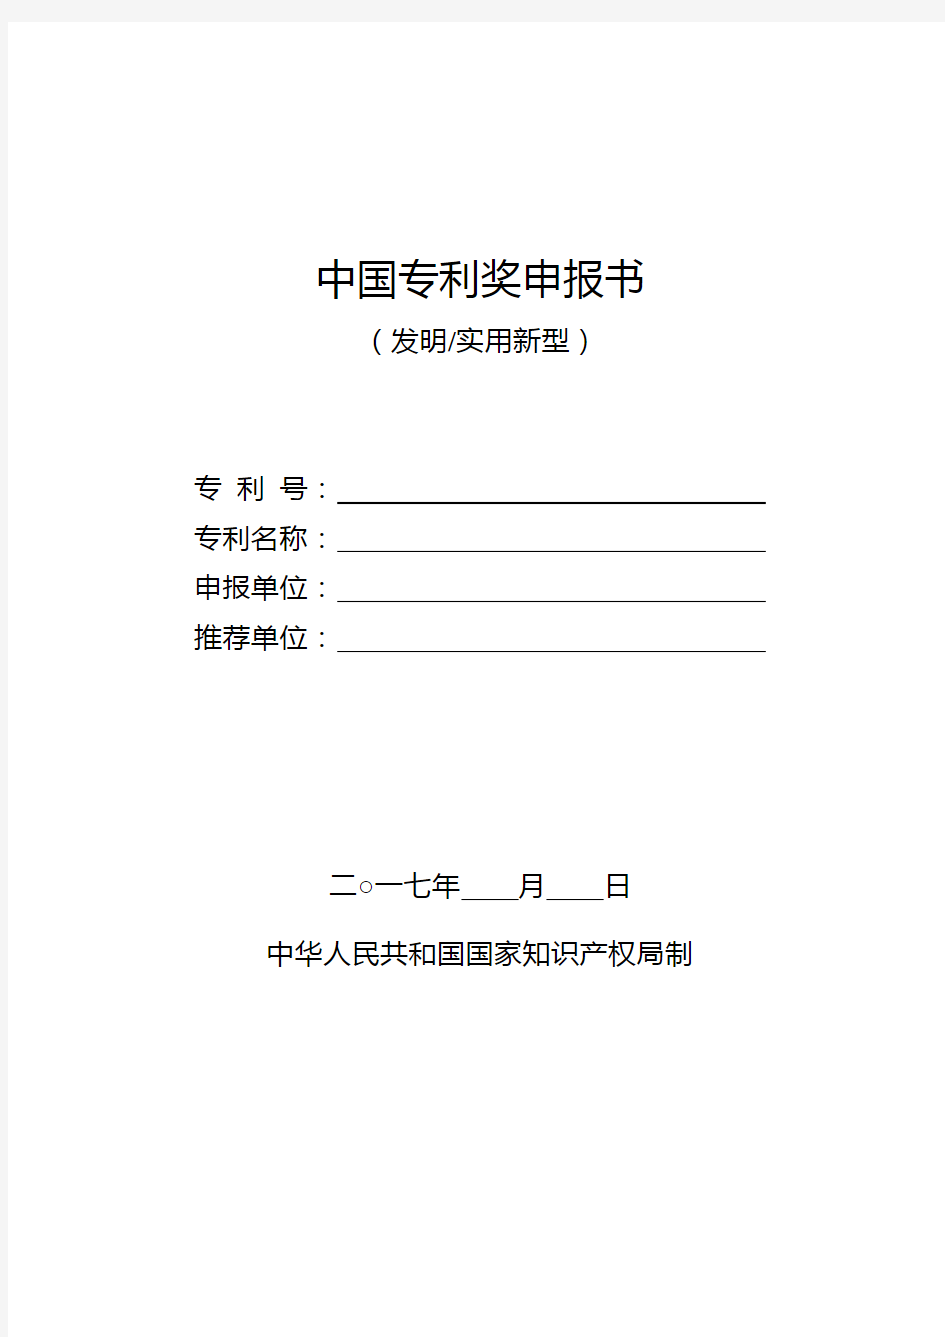 中国专利奖申报书(发明、实用新型)